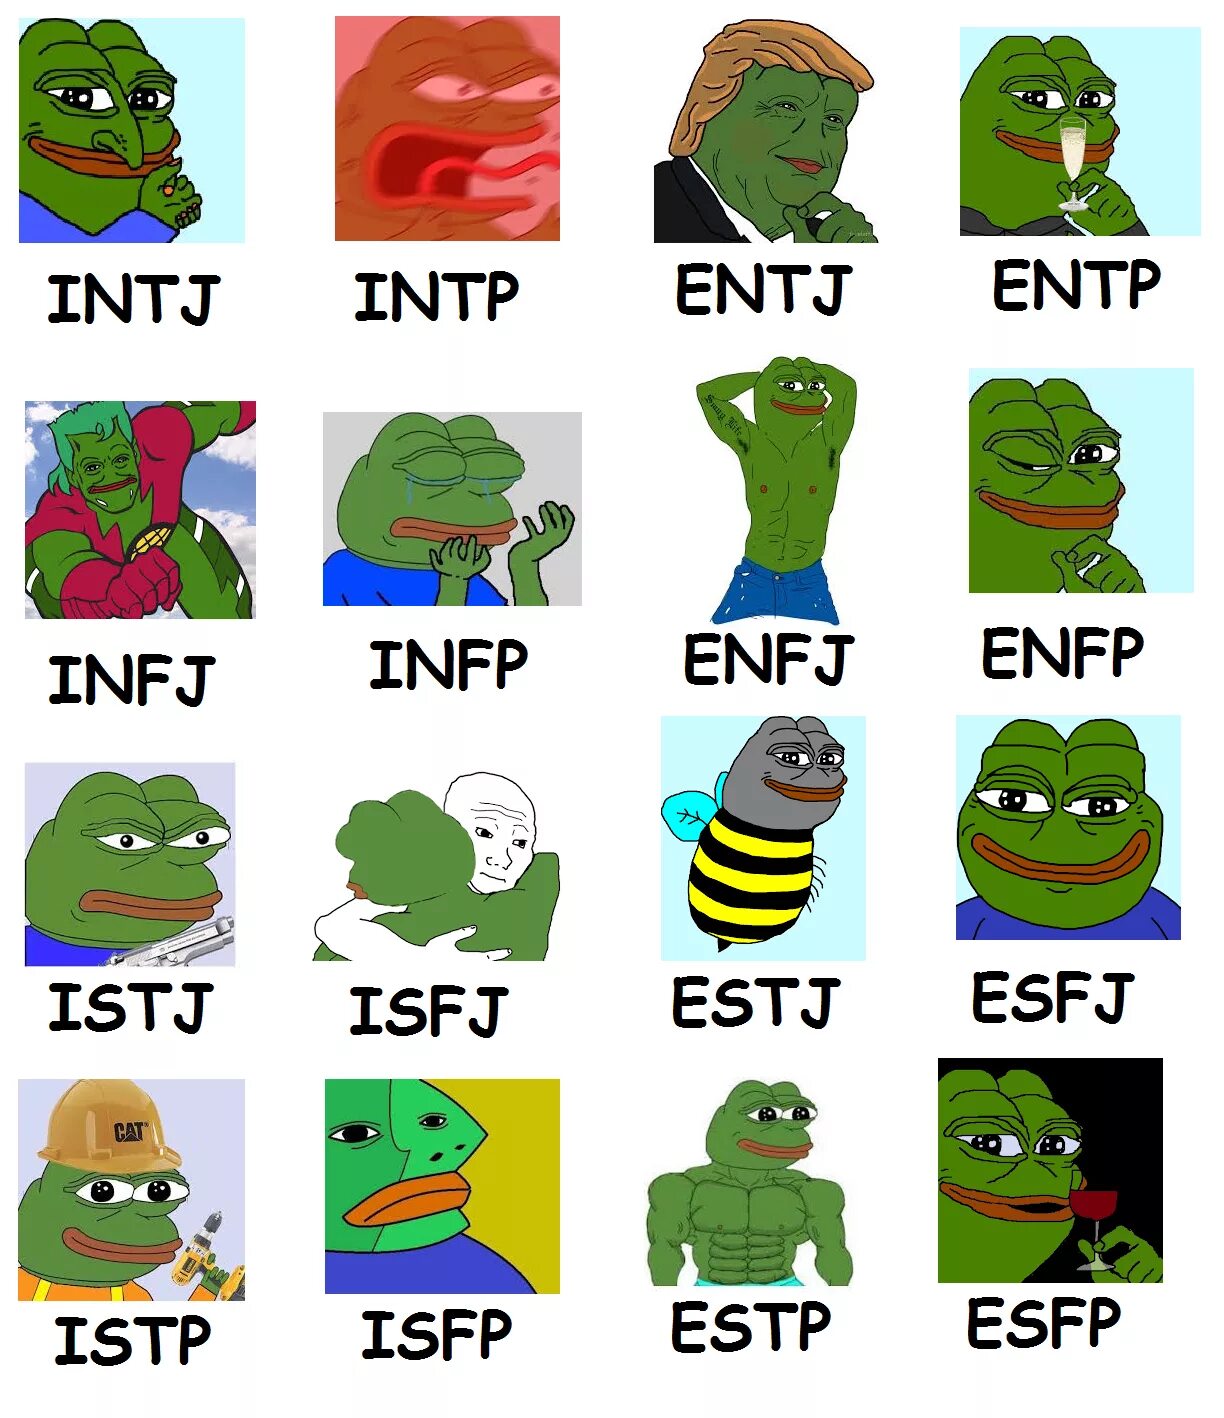 Entj a тип личности. MBTI INFJ персонажи. MBTI 16 personalities ученый. Мемы про типы личности MBTI. ИНТП МБТИ.